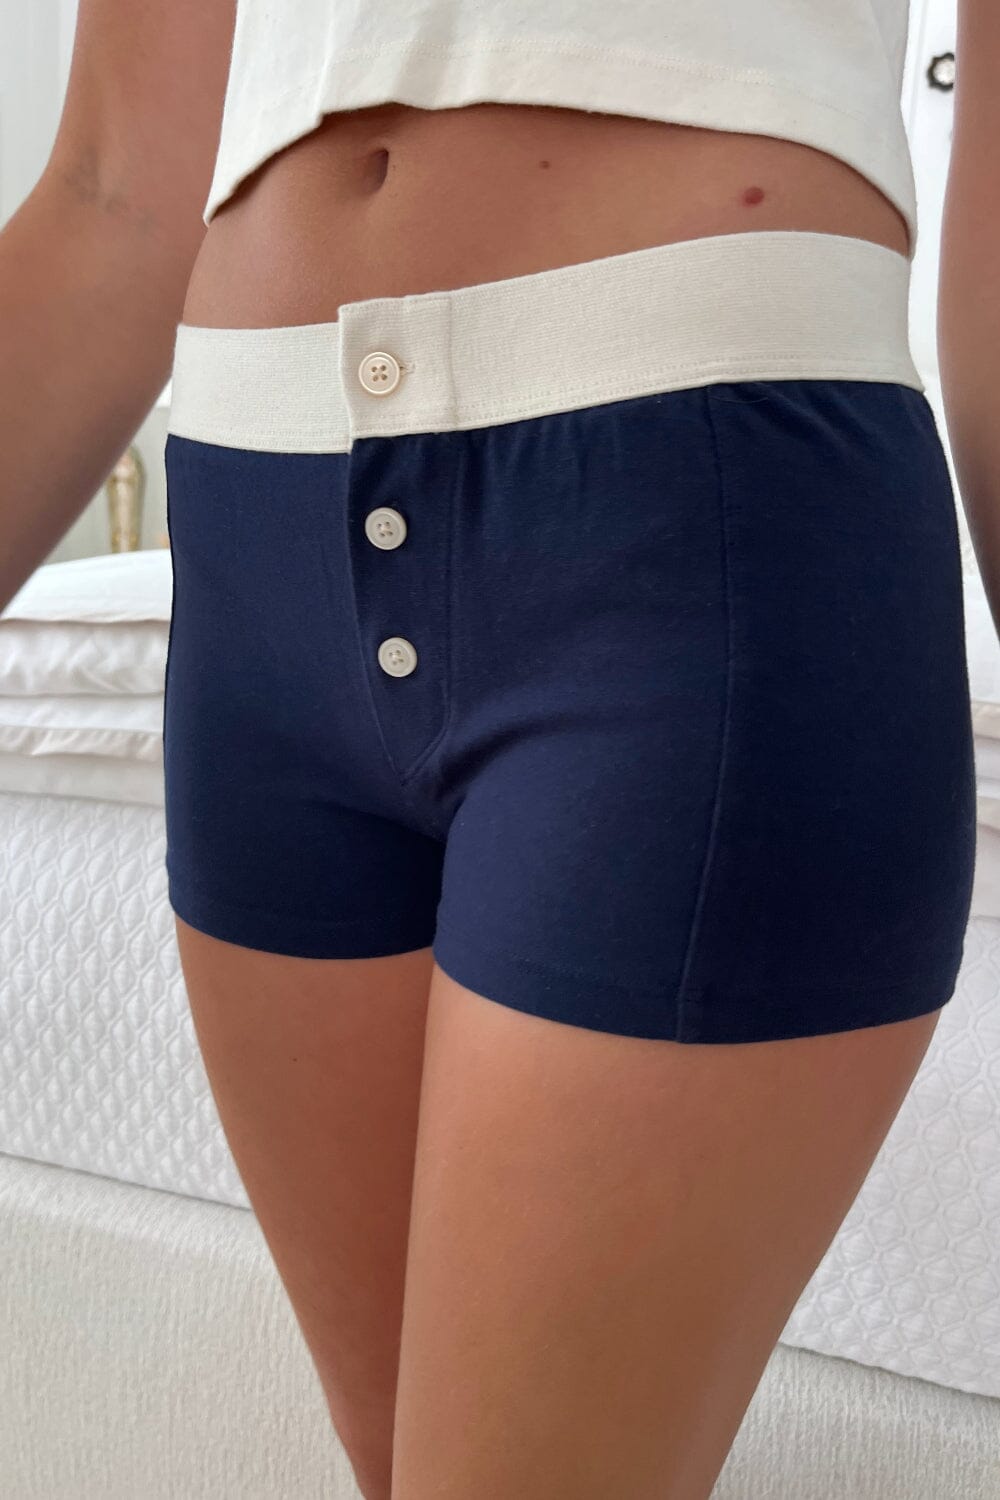 Boy Short Underwear